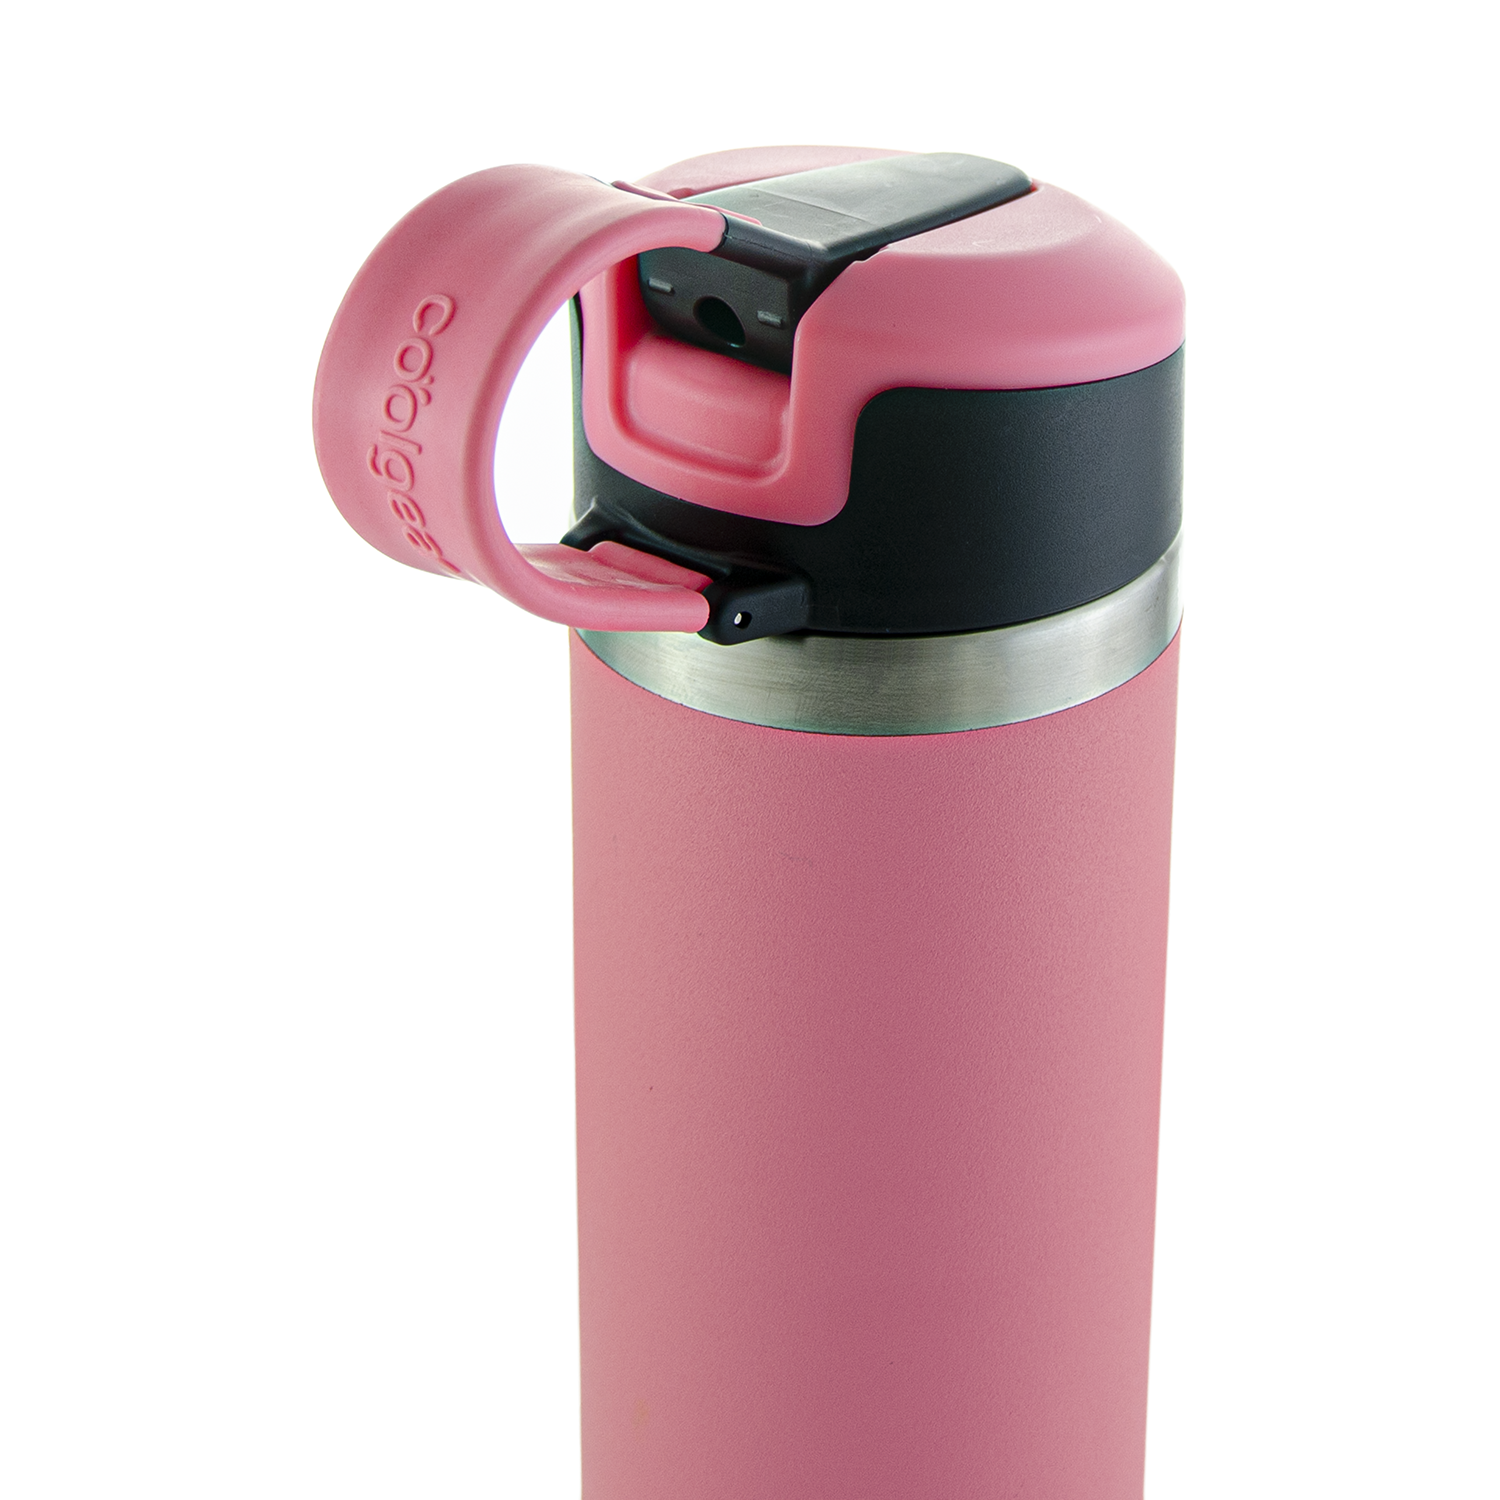 22oz Pink Flip Straw Reusable Water Bottle BpA Free